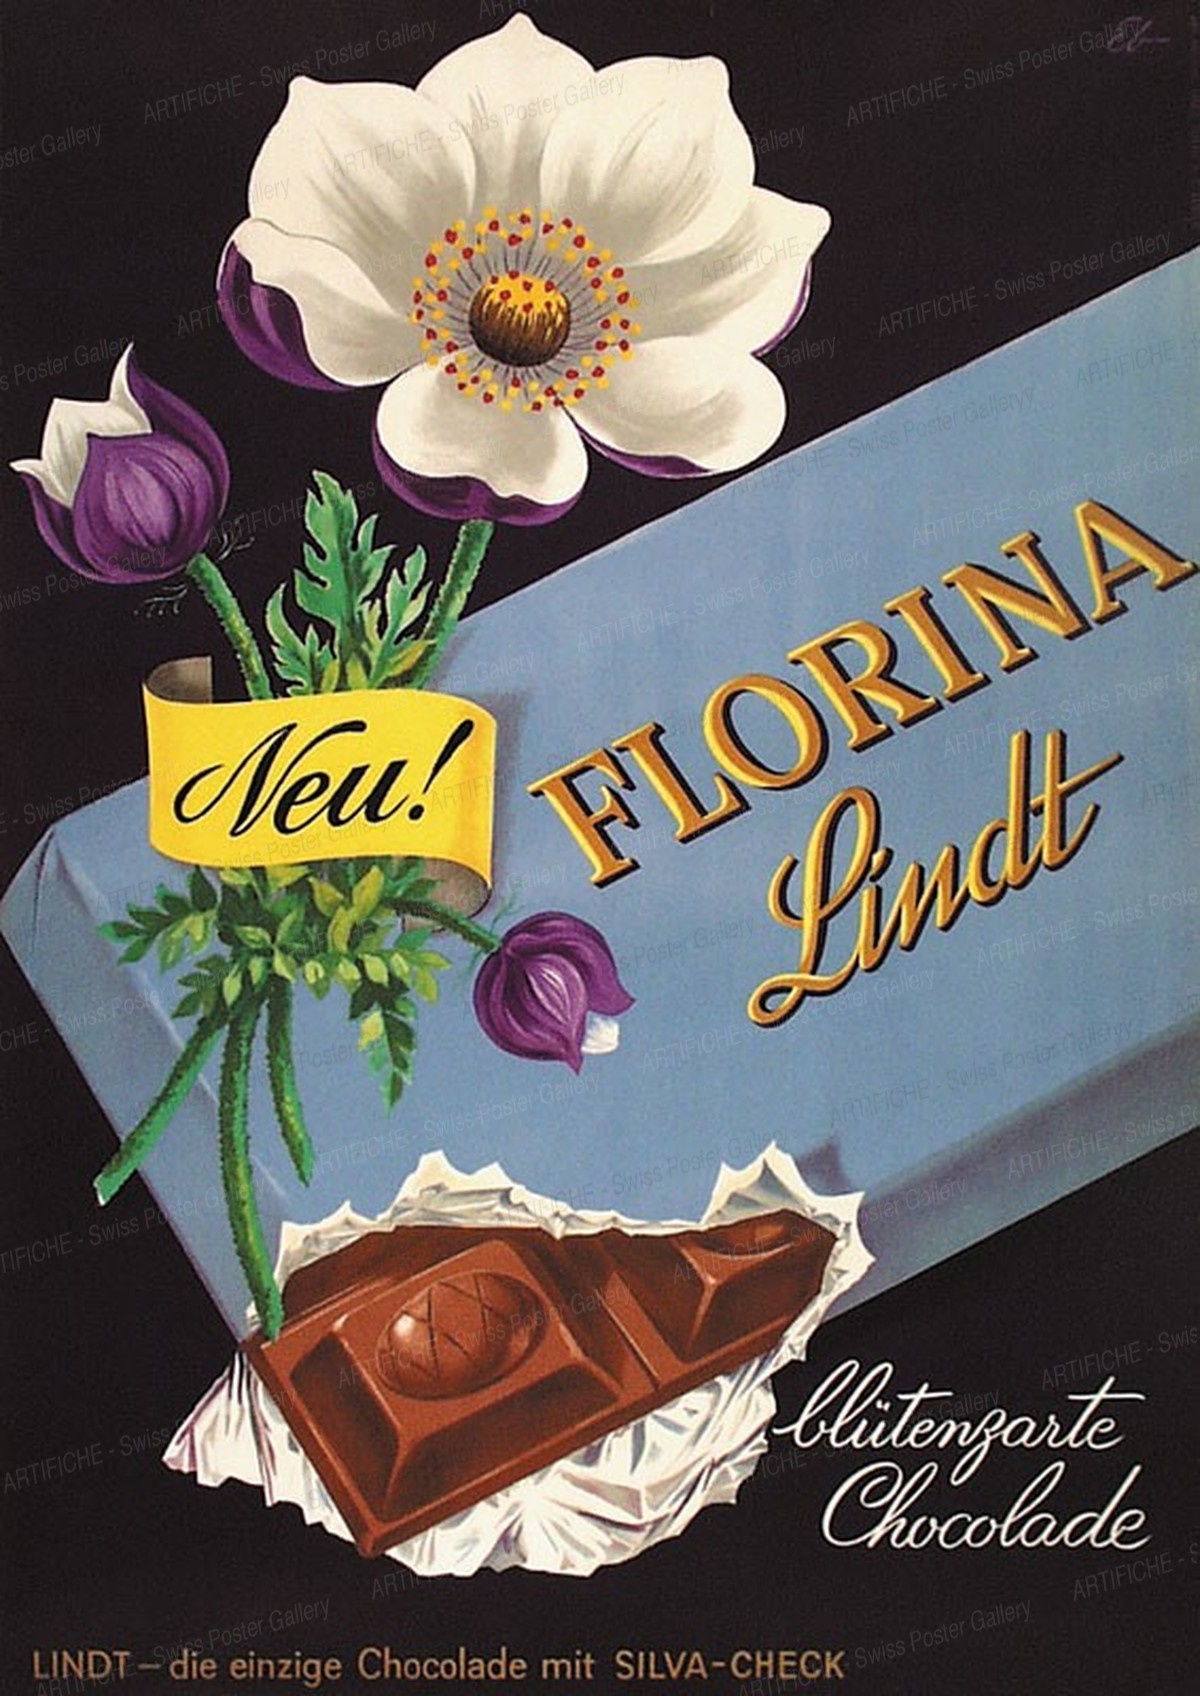 Florina Lindt – Blütenzarte Chocolade, Emil Ebner